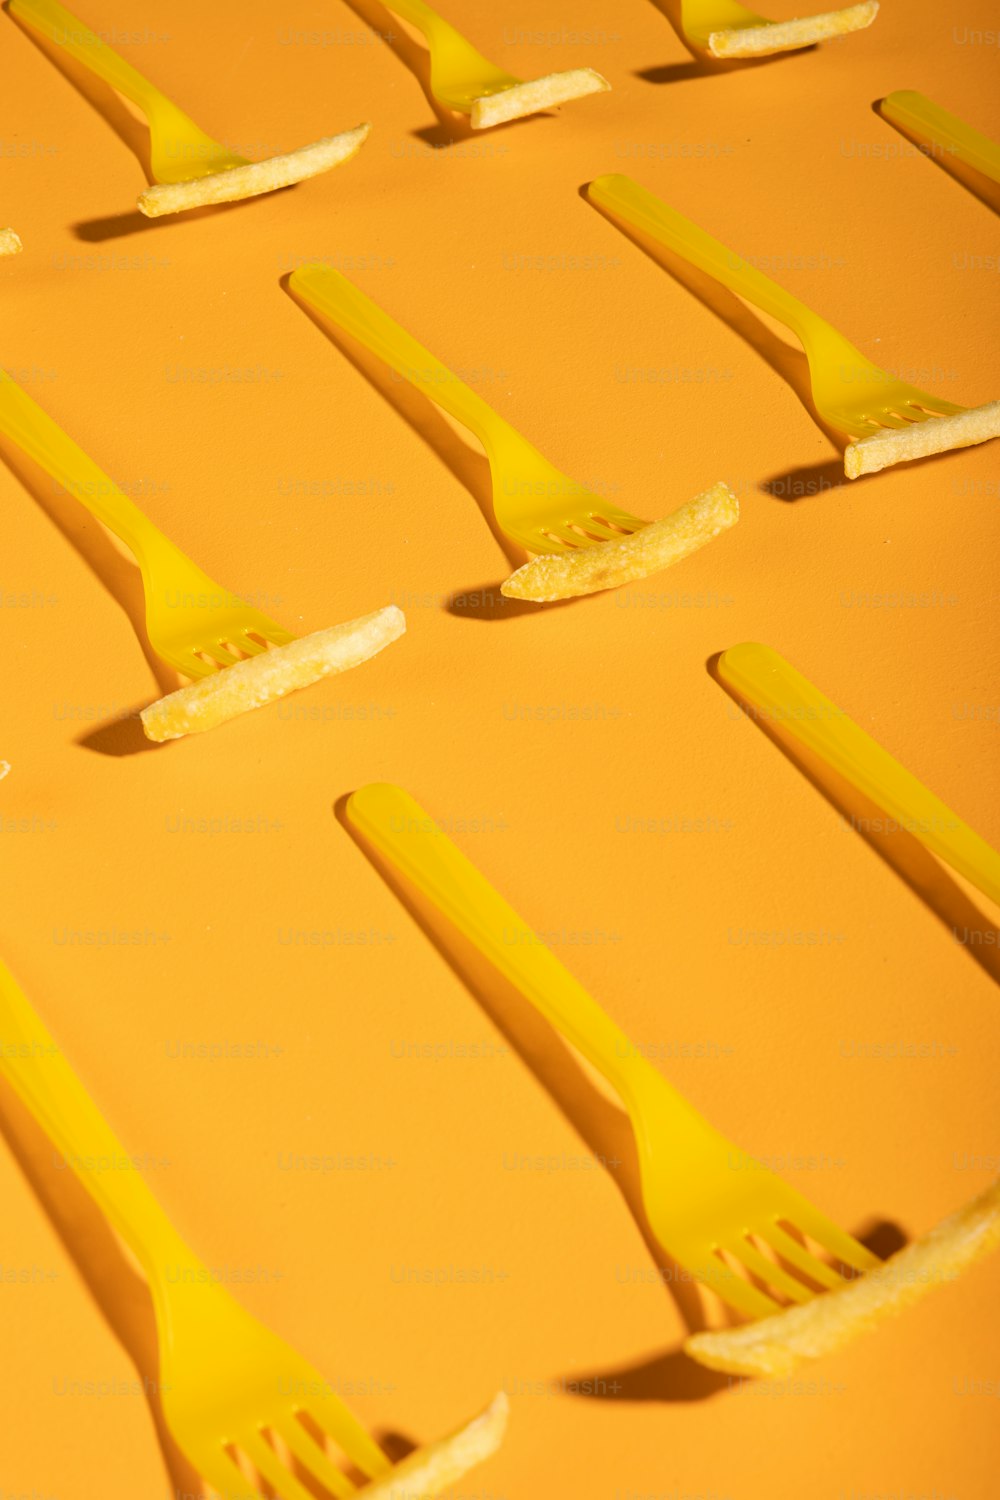 un gruppo di spazzolini da denti gialli adagiati uno sopra l'altro